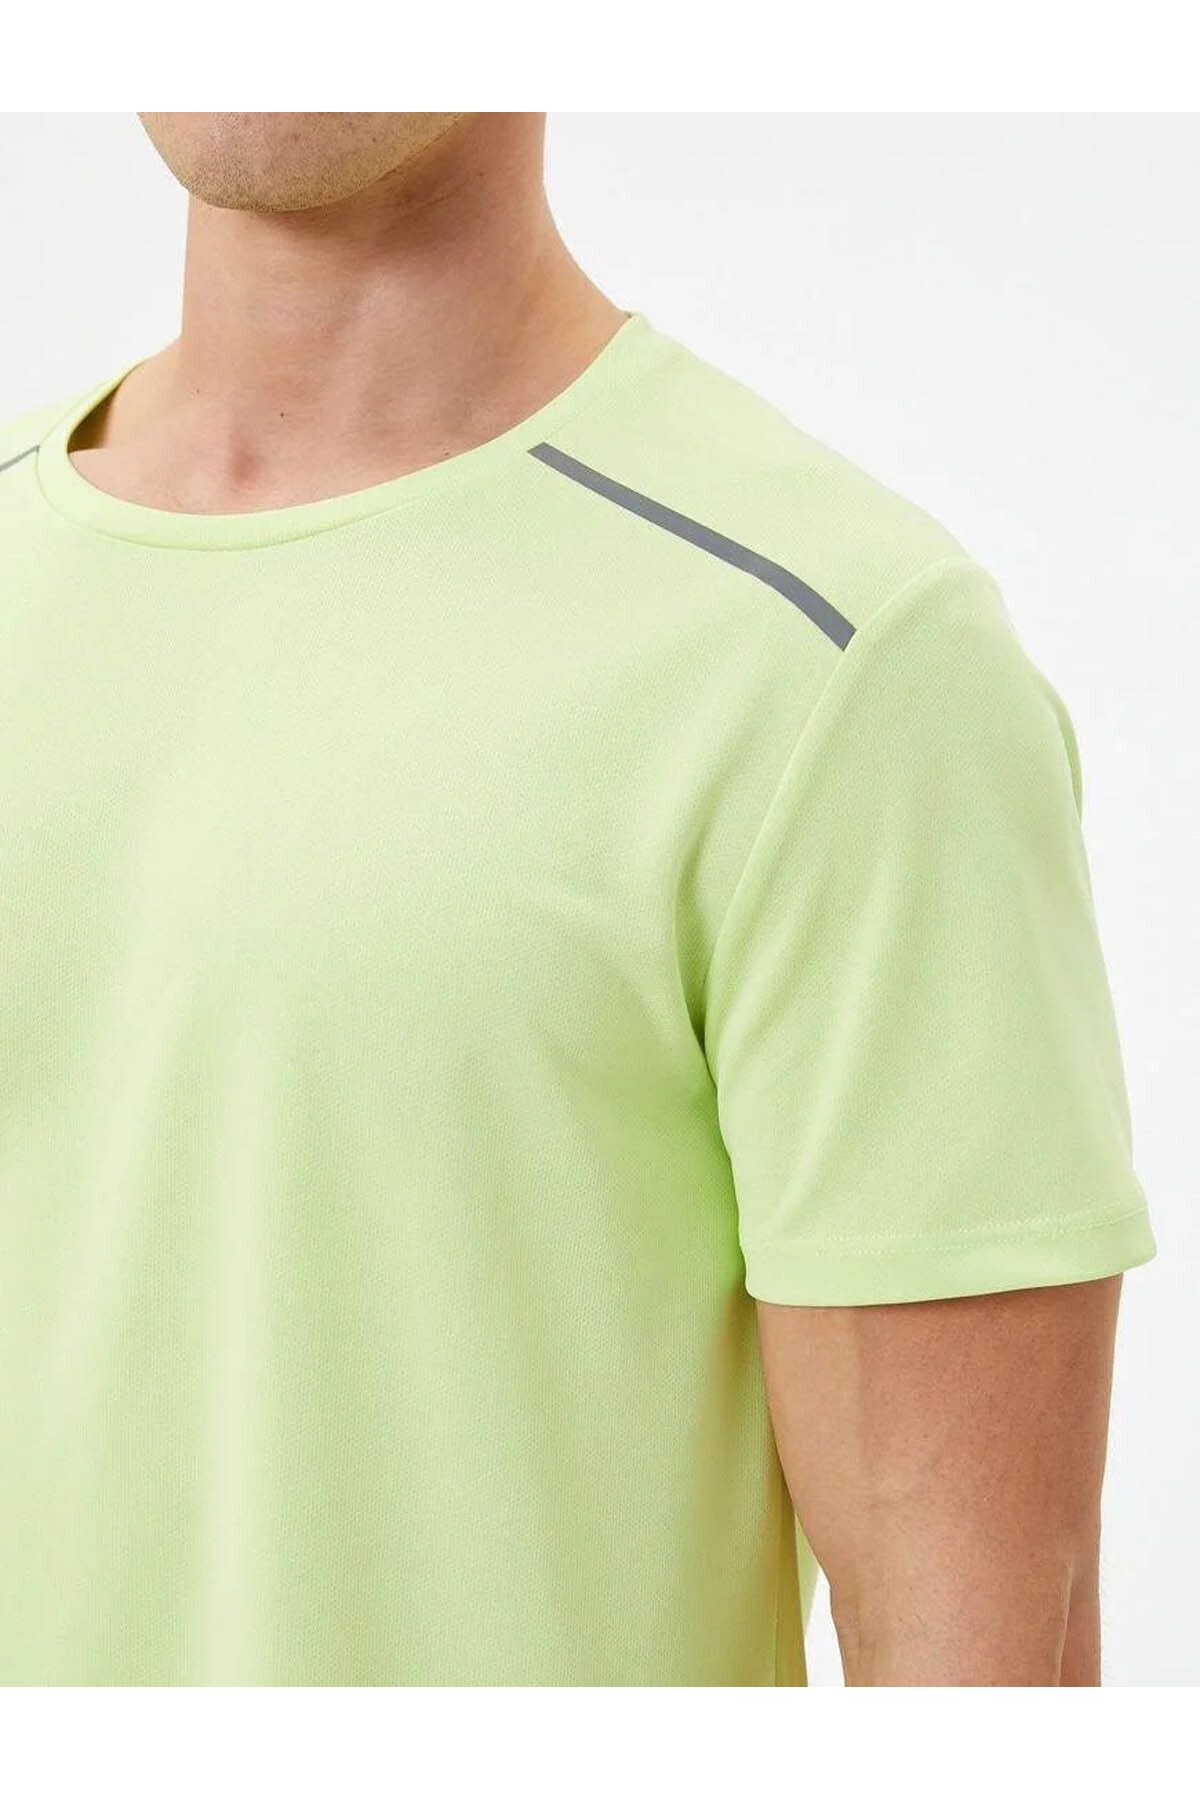 Koton Erkek T-shirt Yeşil 4sam10065nk